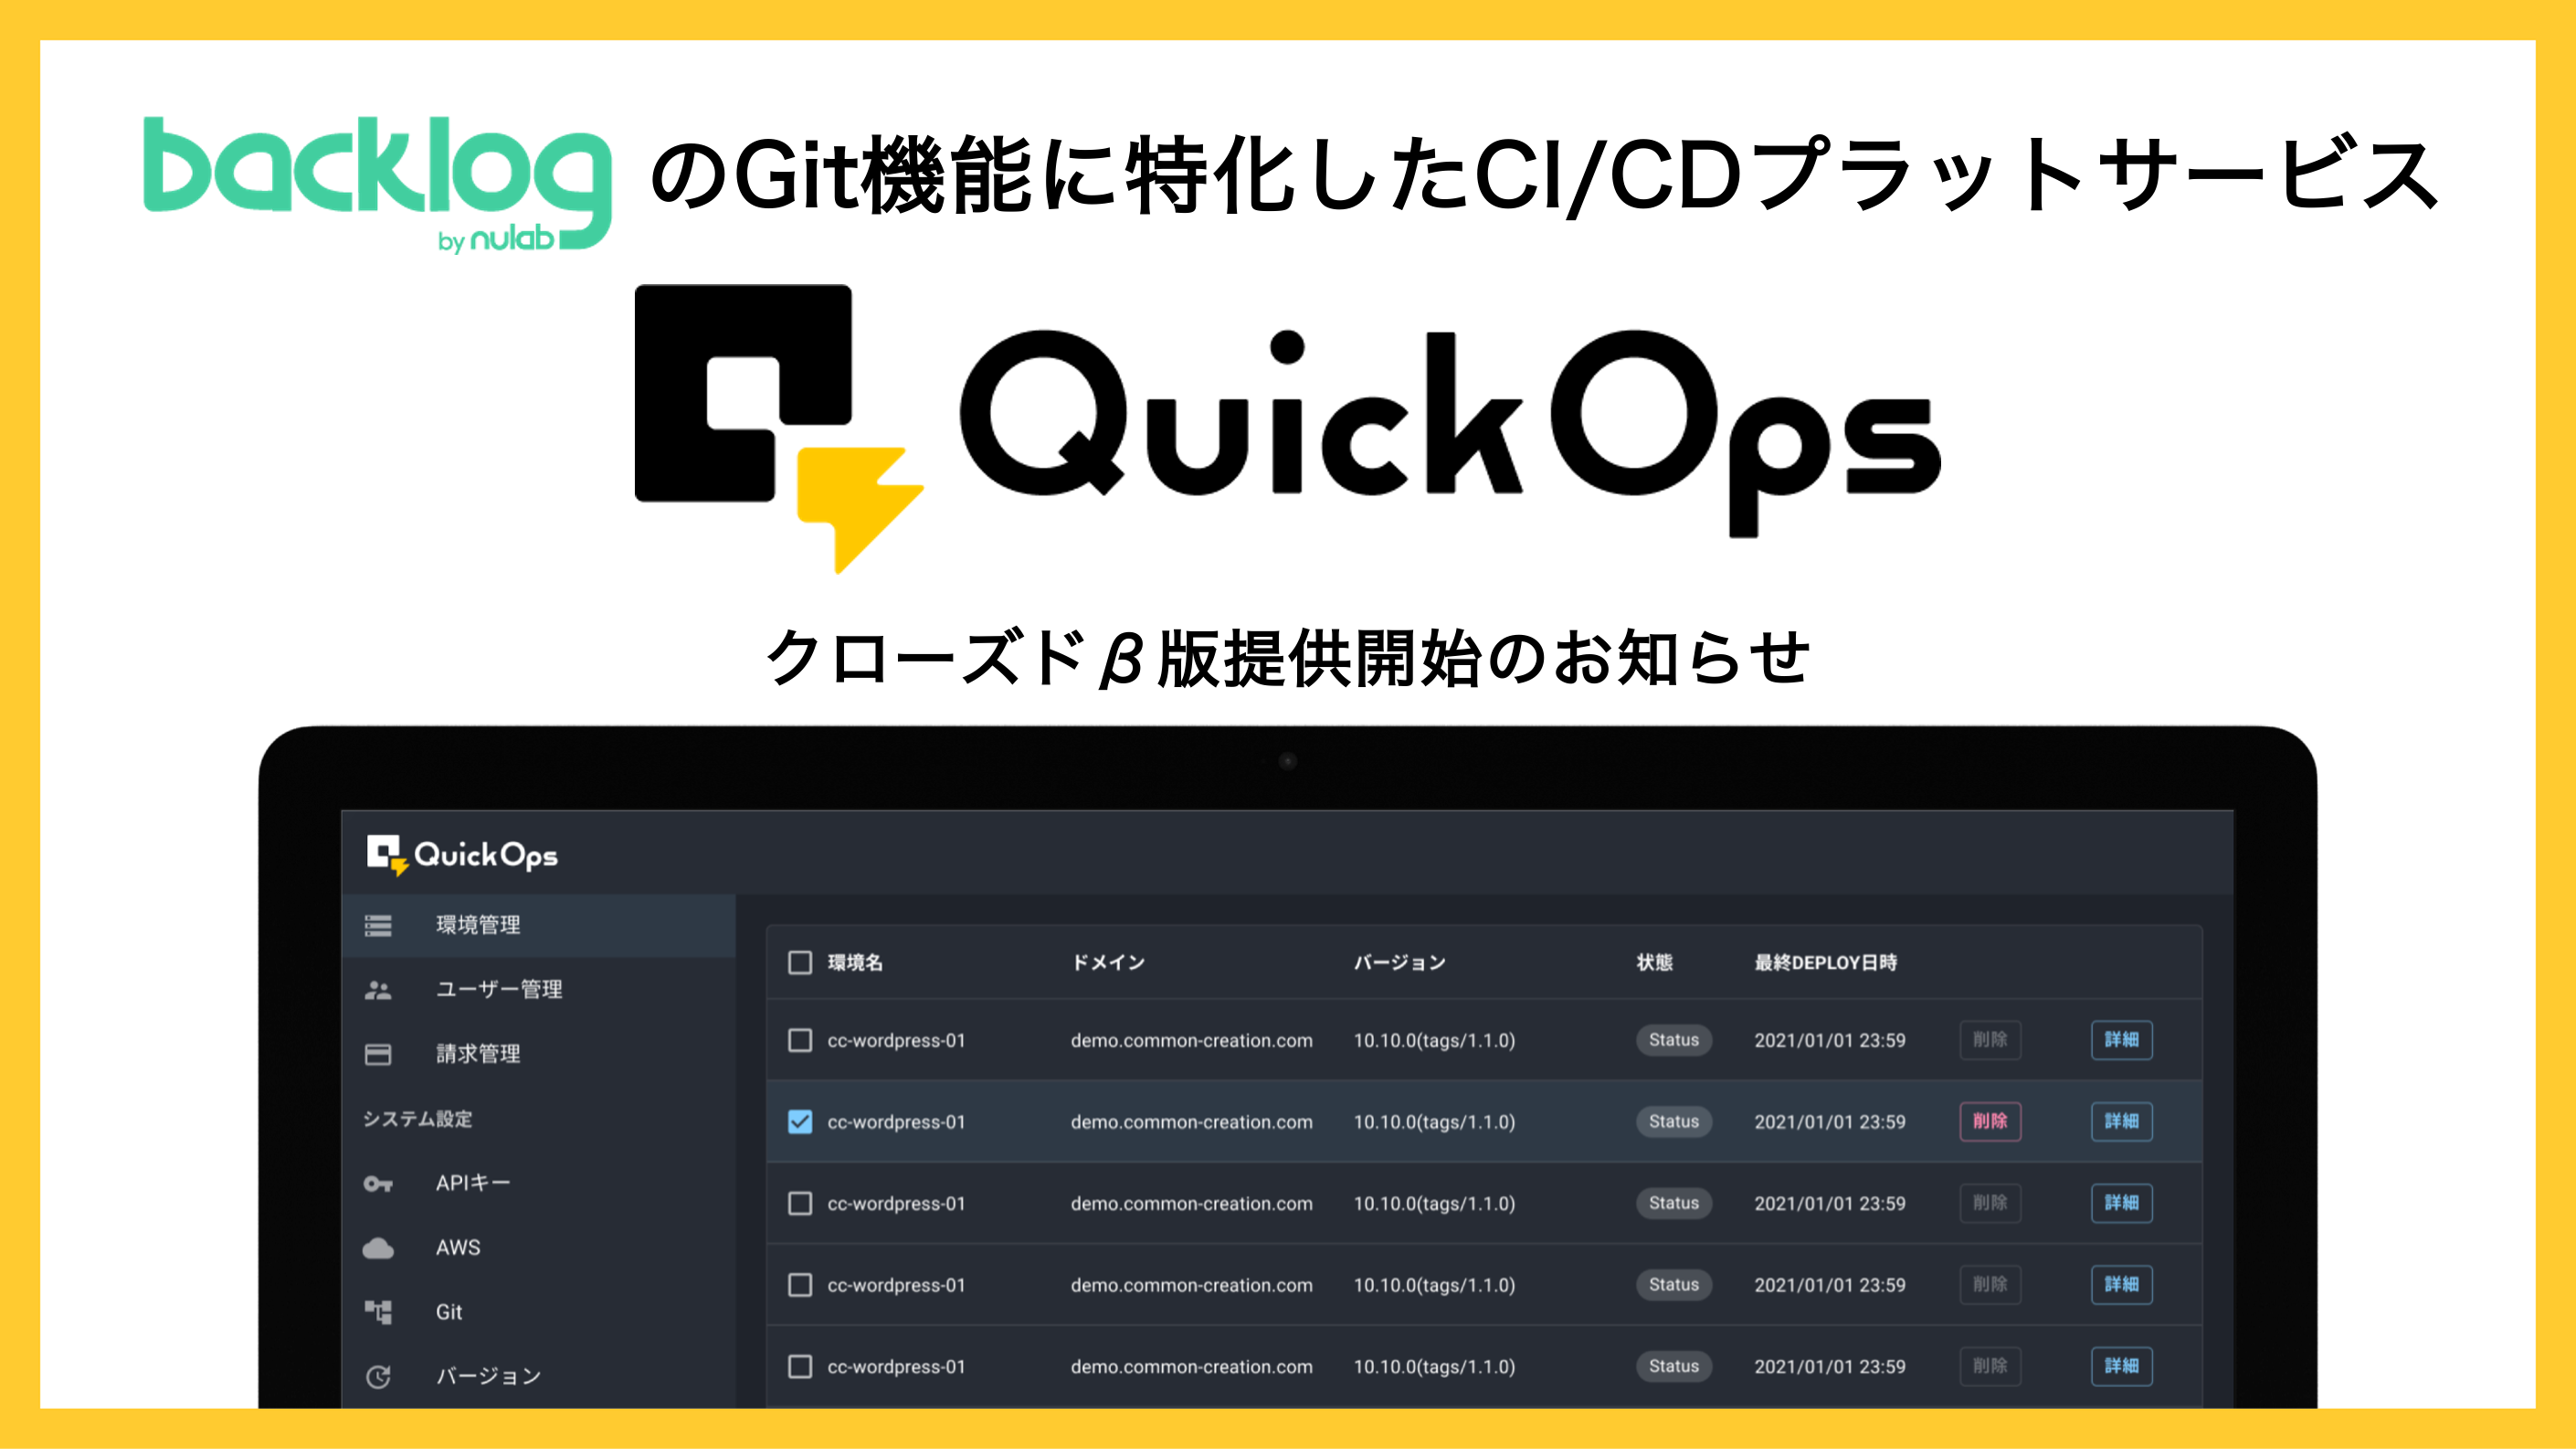 プロジェクト・タスク管理ツール「Backlog」のGit機能に特化したCI/CDサービス「QuickOps」のクローズドβを開始